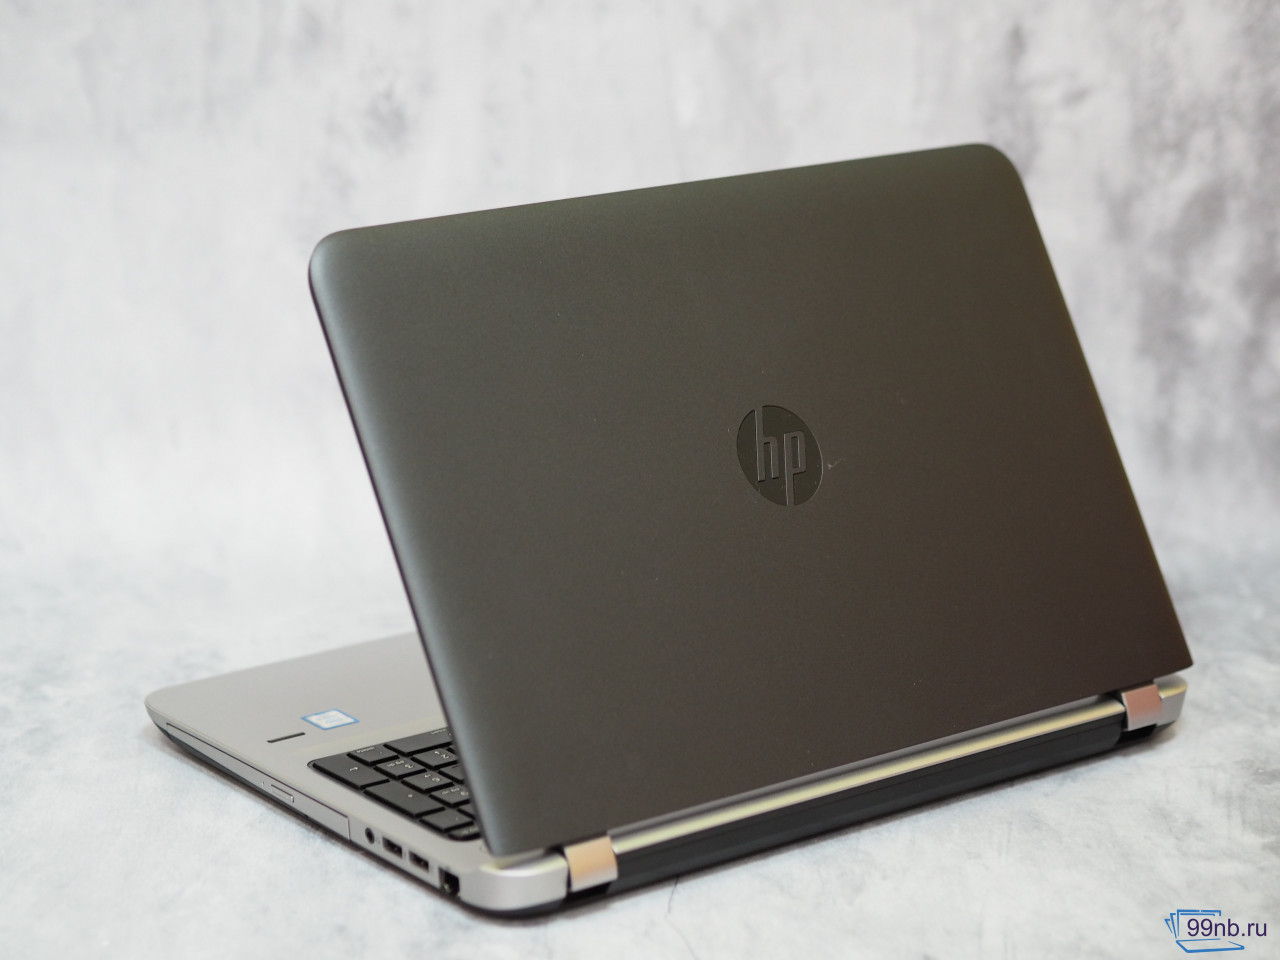   HP PRObook на i5